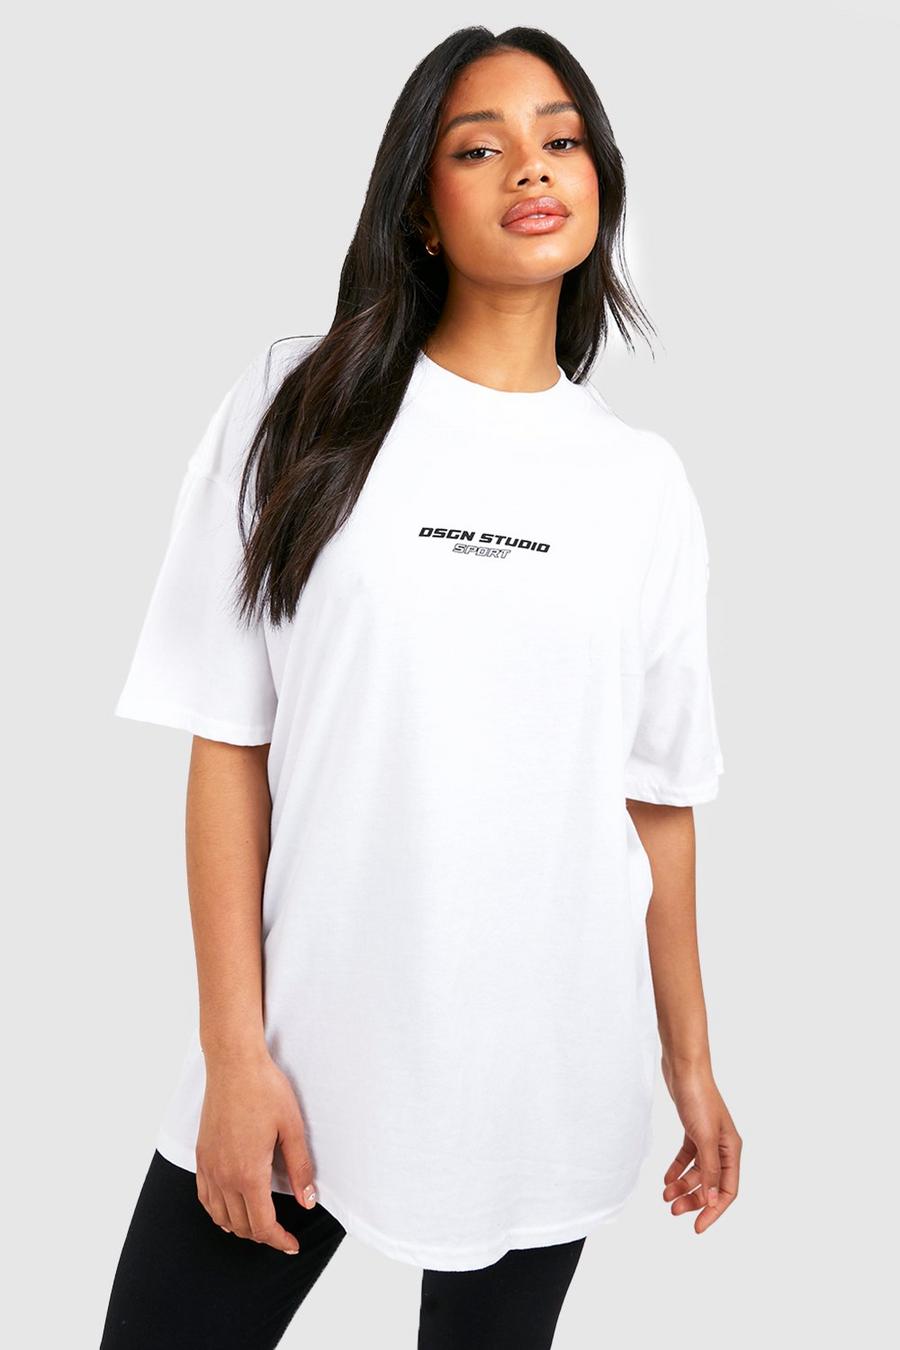 T-shirt da palestra oversize Dsgn Studio Sports, White bianco